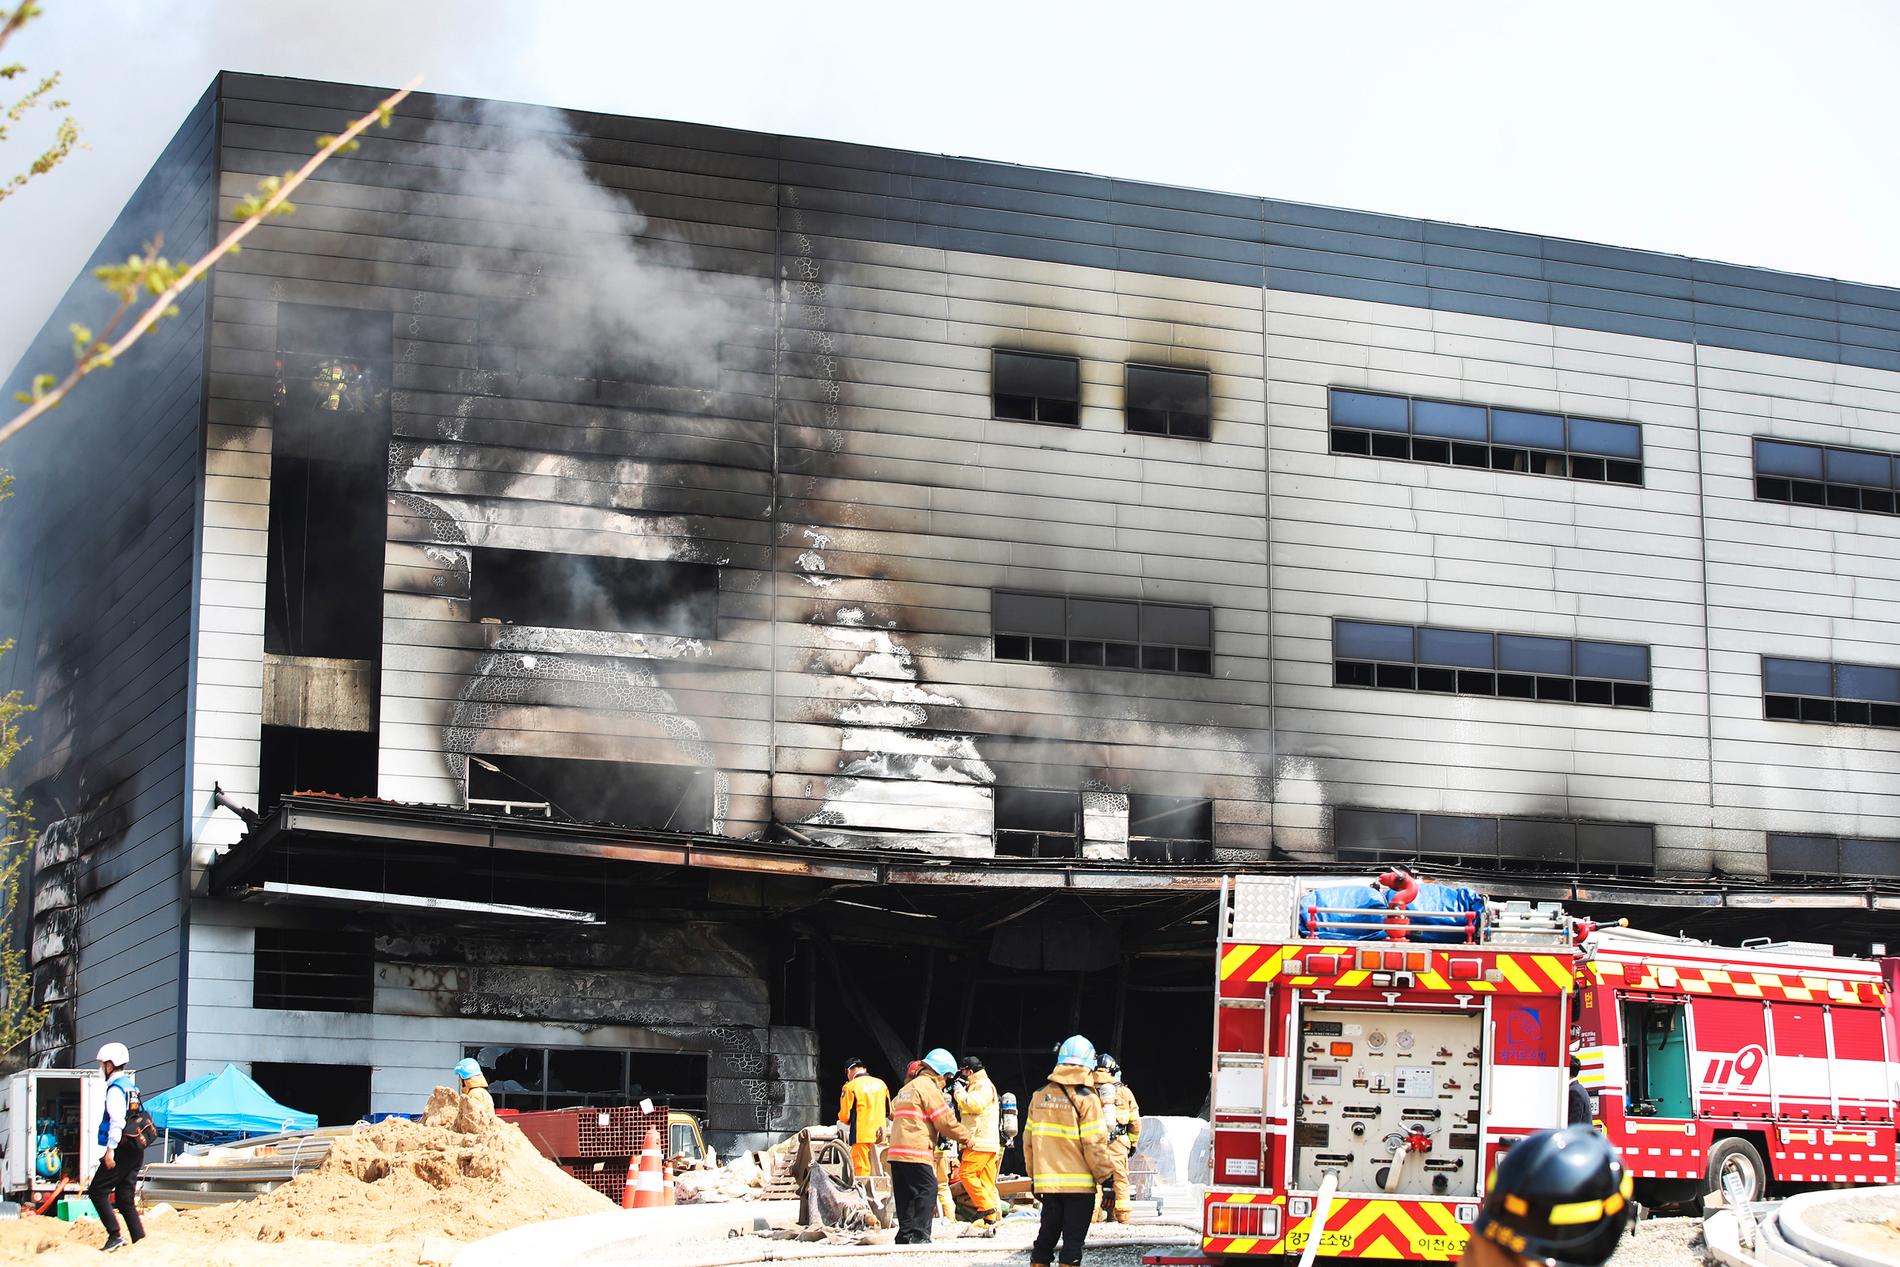 Många arbetare har omkommit i en brand på en byggarbetsplats i staden Icheon, Sydkorea.